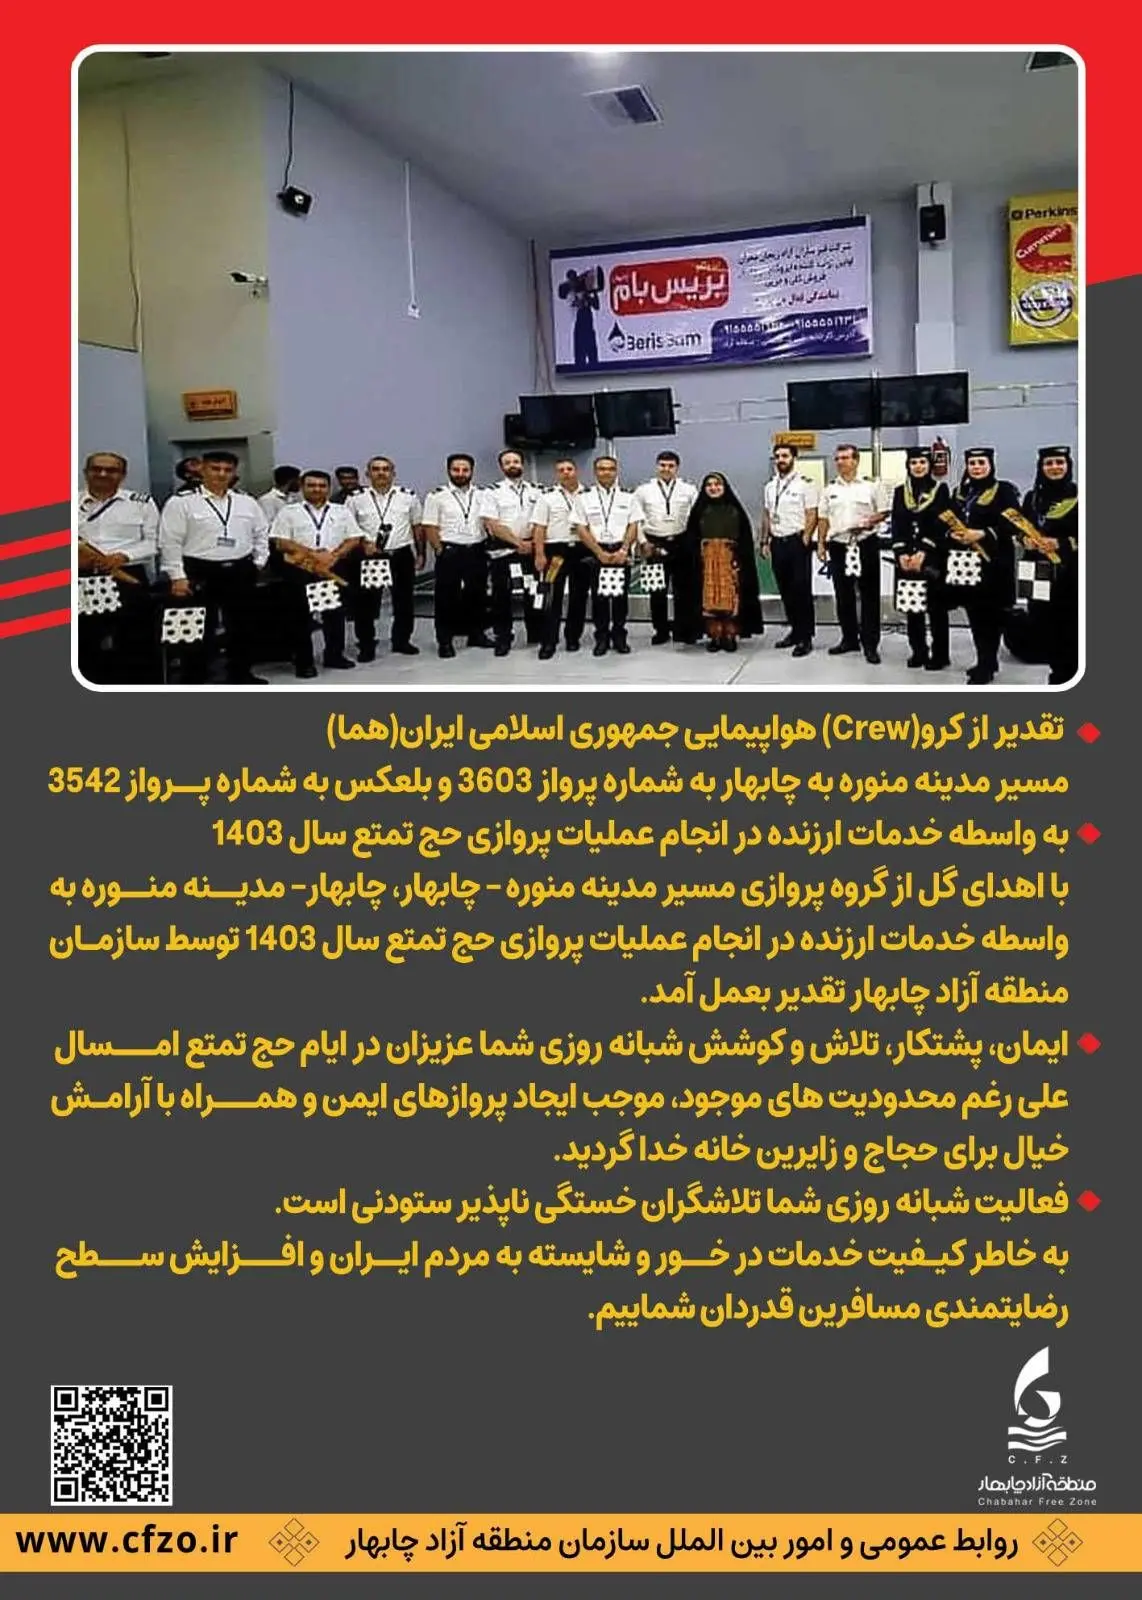 تقدیر از کرو(Crew) هواپیمایی جمهوری اسلامی ایران(هما) مسیر مدینه منوره به چابهار به شماره پرواز 3603 و بلعکس به شماره پرواز 3542